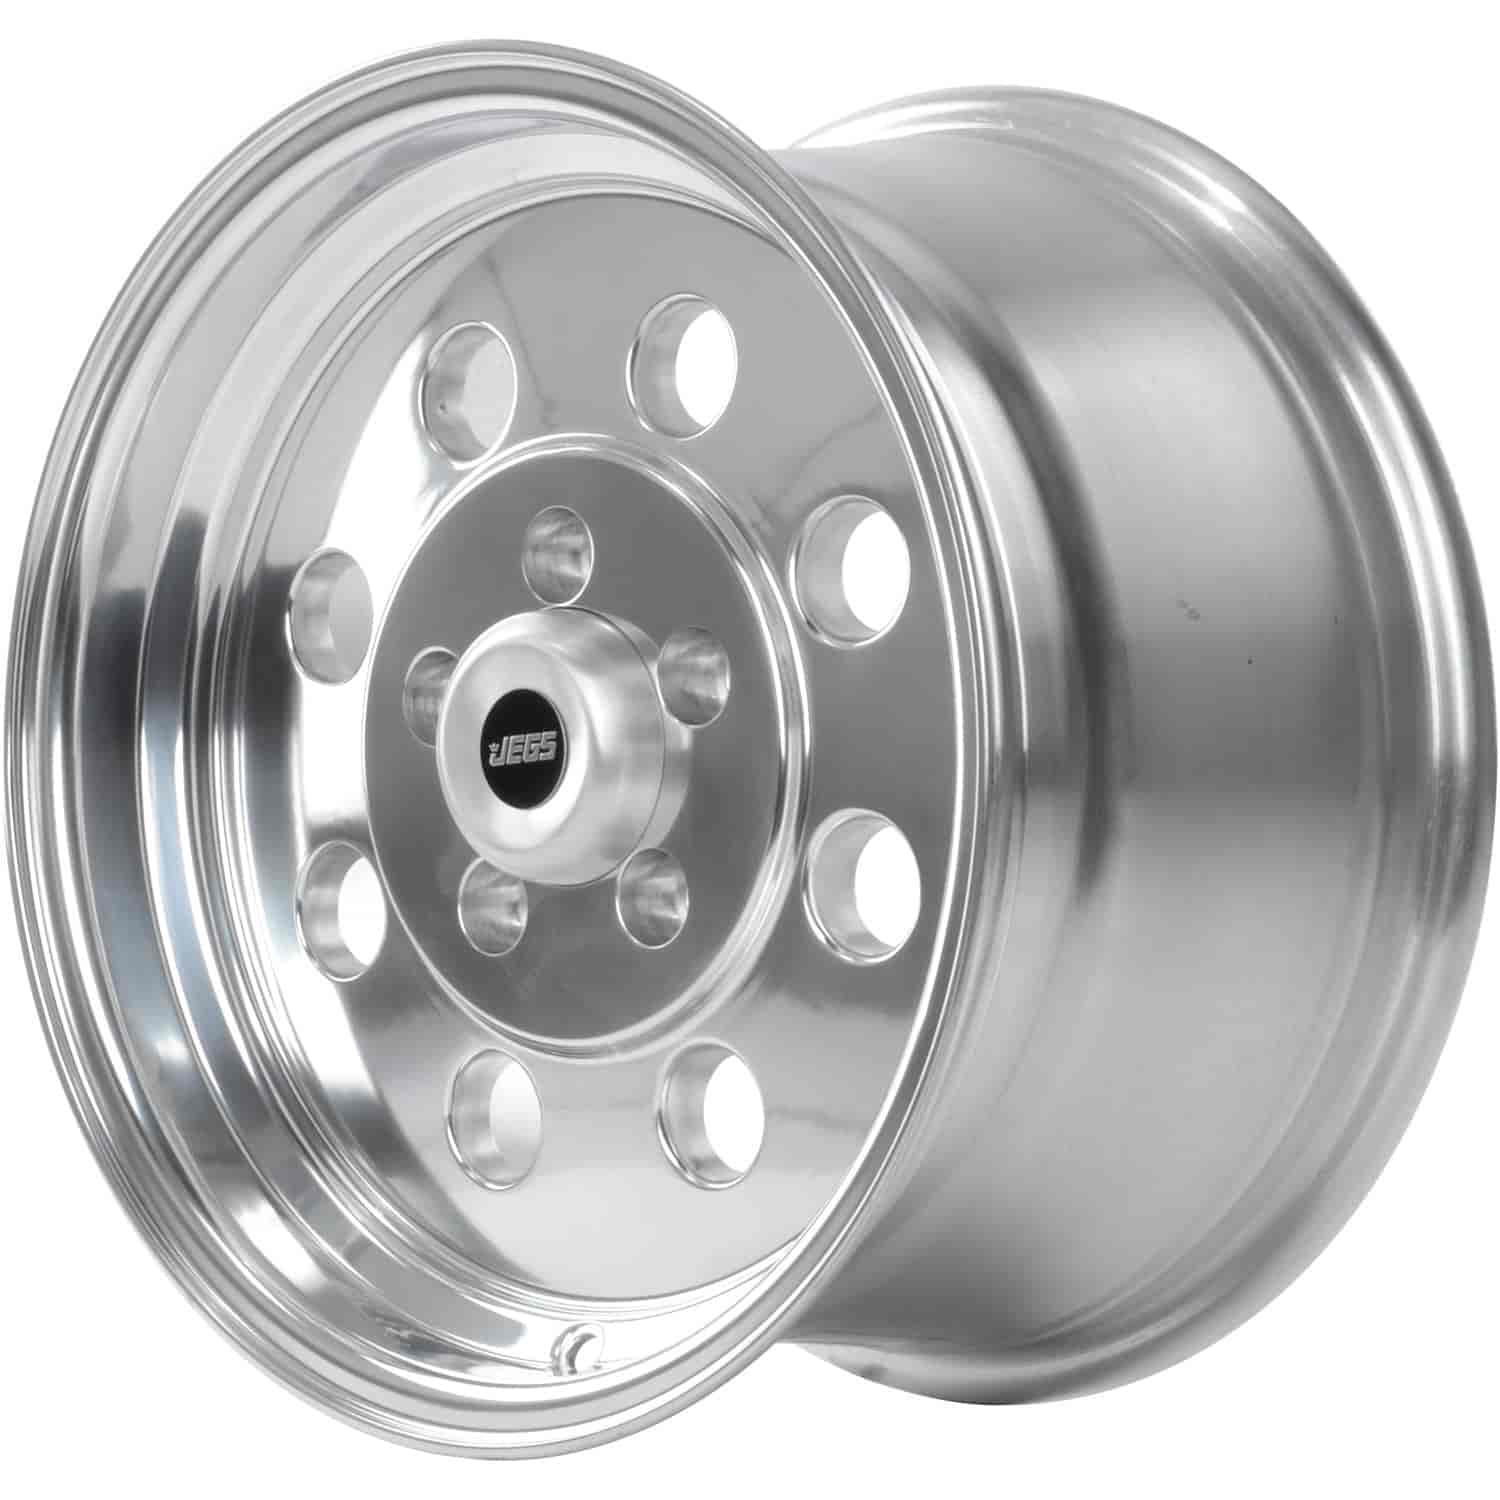 Sport Lite 8-Hole Wheel [Size: 15" x 8"] Polished